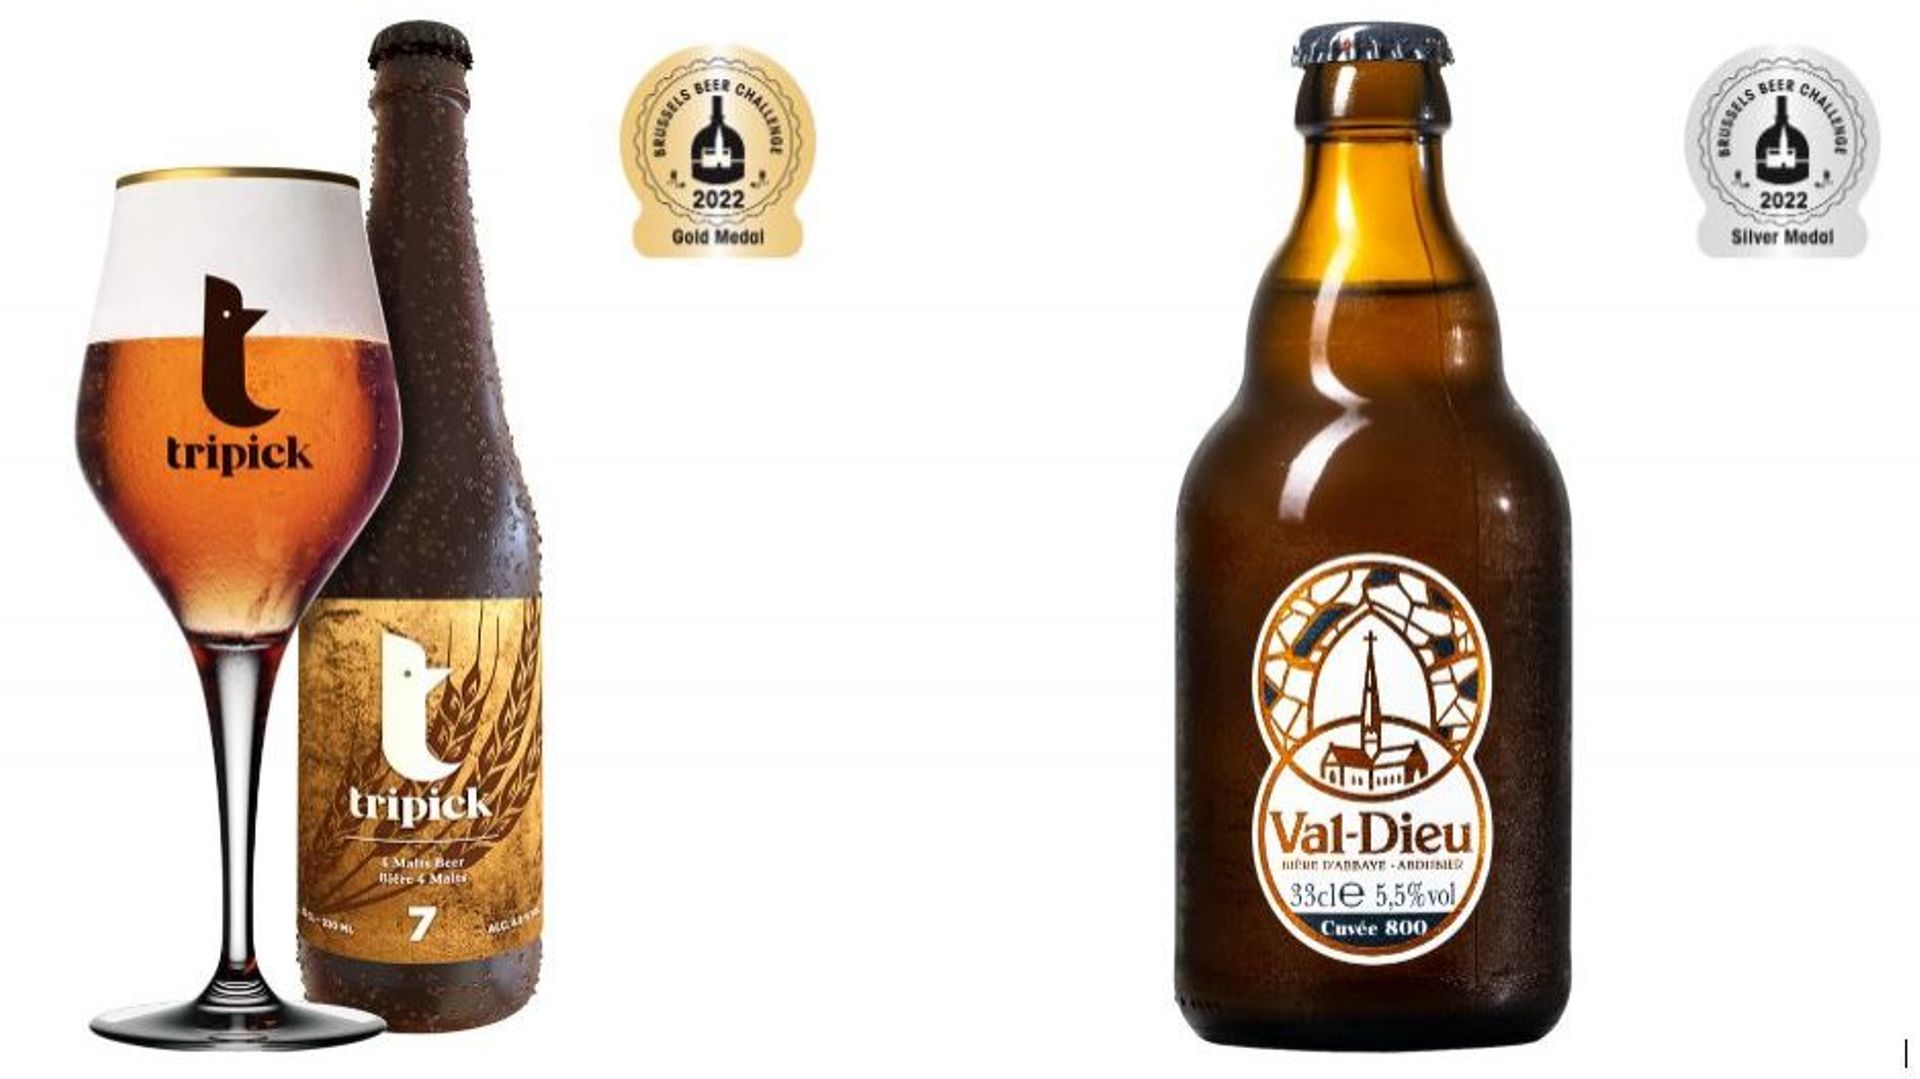 La Tripick 7 et la Val Dieu cuvée 800 sont les bières liégeoises figurant au palmarès du prestigieux concours.